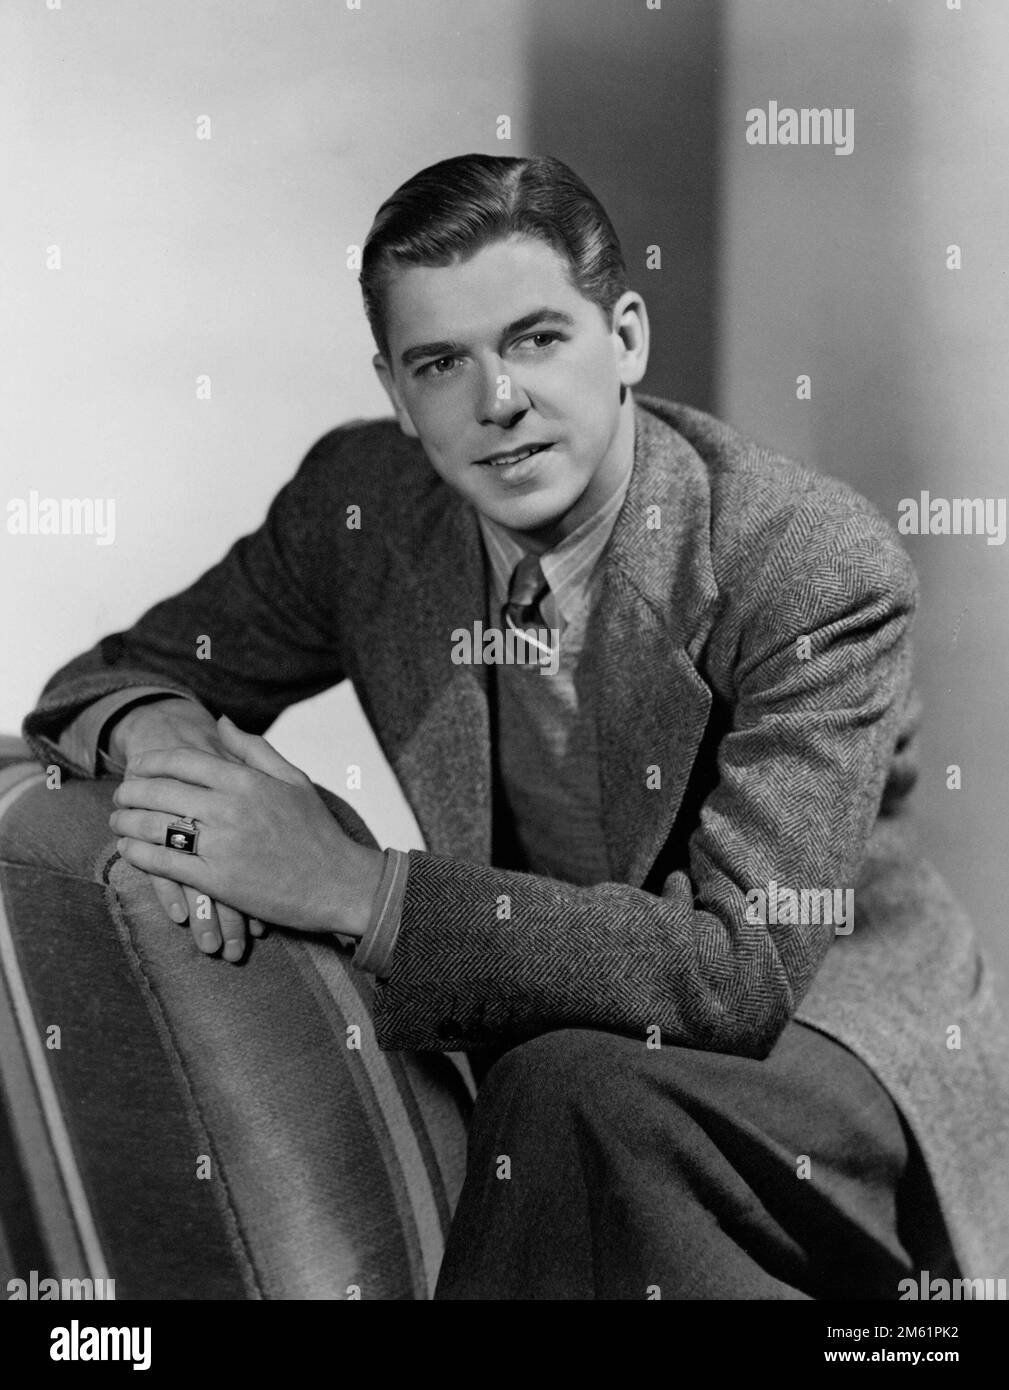 Ronald Reagan c 1940 (die Schauspielerjahre) Stockfoto